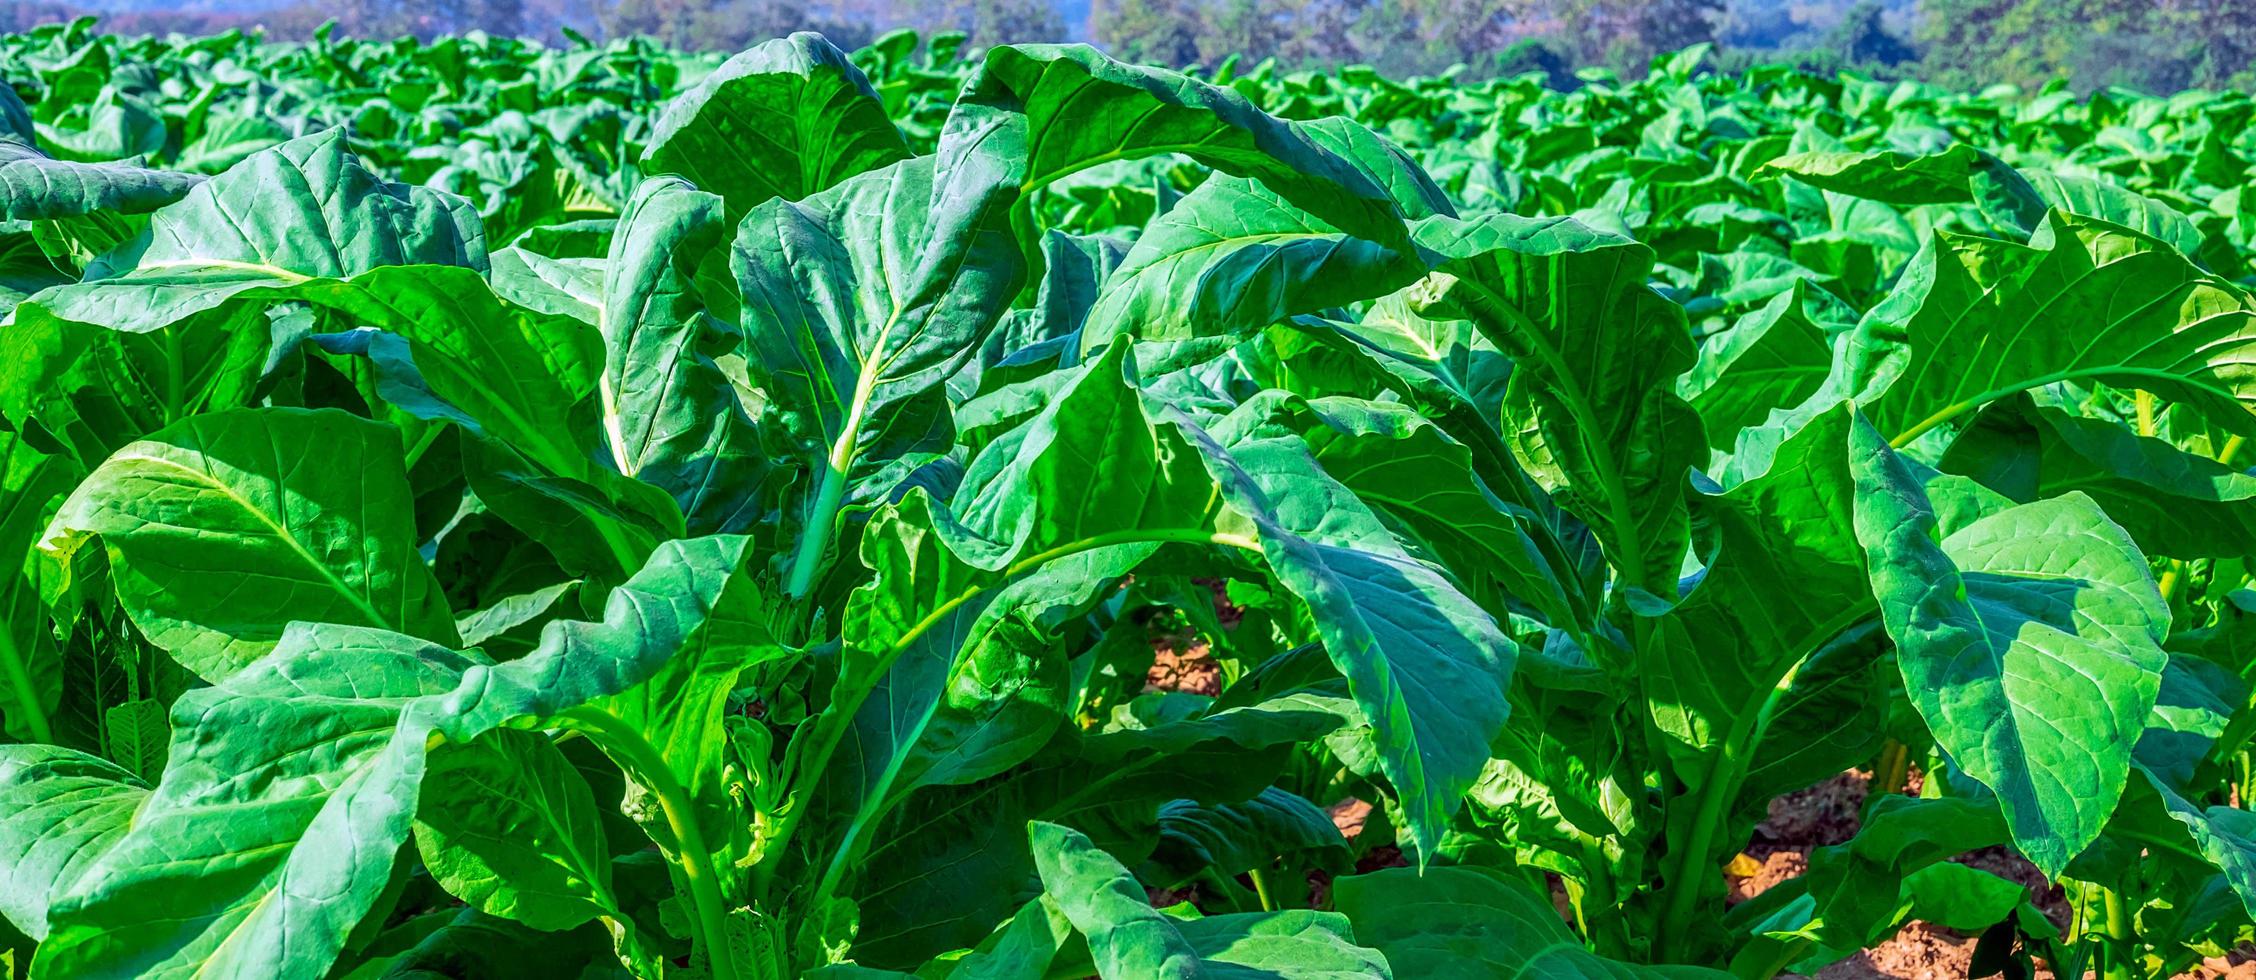 dichtbij omhoog van tabak groot blad gewassen groeit in tabak plantage veld. tropisch tabak groen blad achtergrond foto